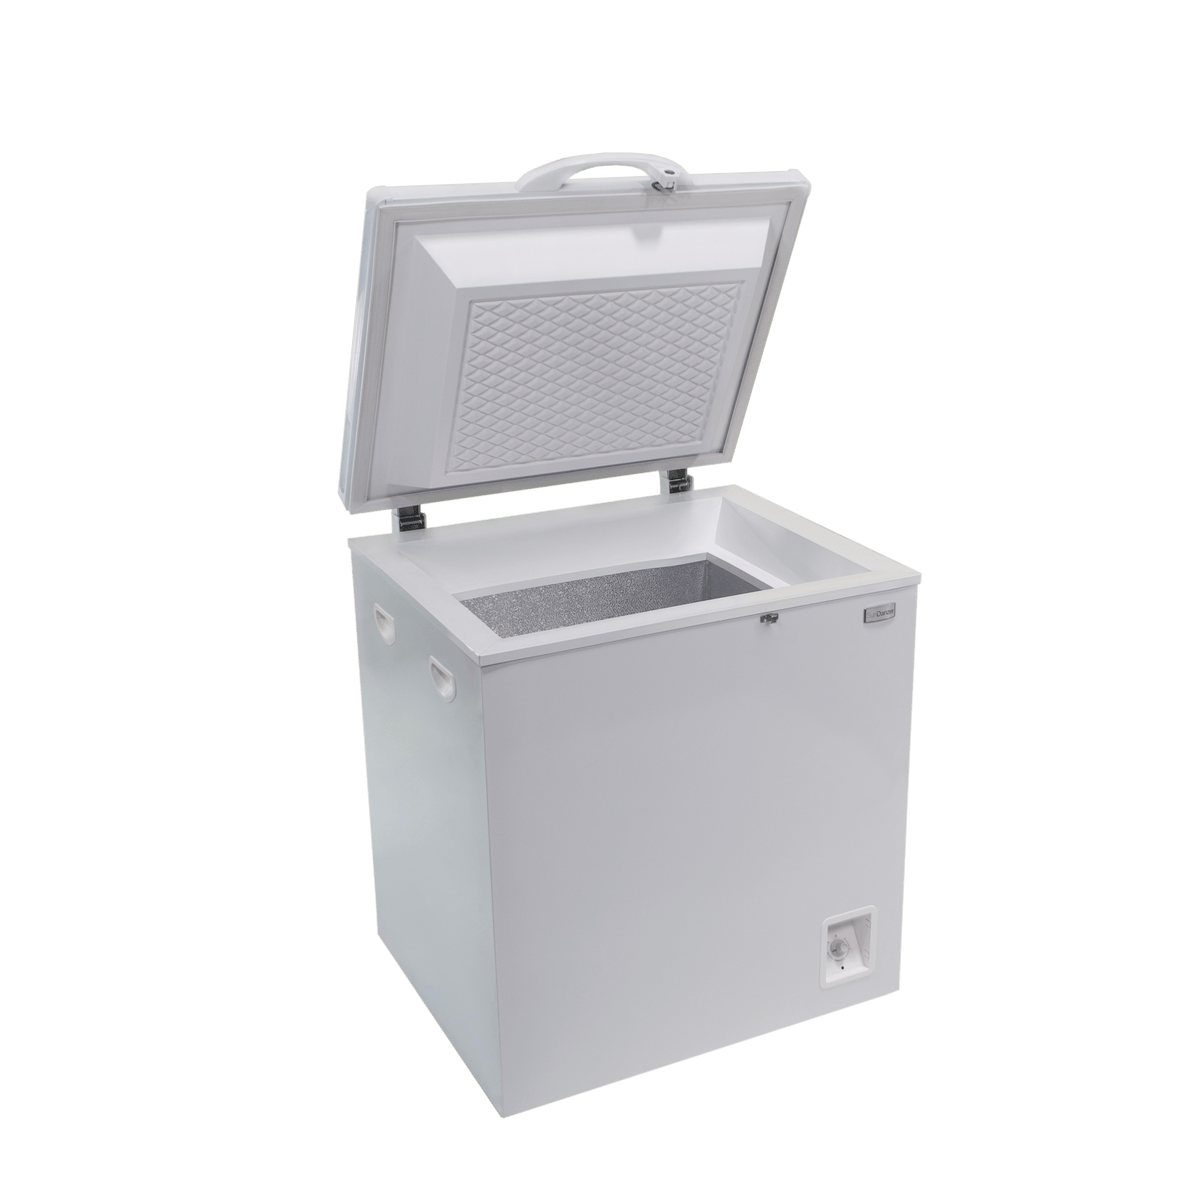 Sundanzer Solar Appliances No A/C Power Option Sundanzer DCR50 50 Litre (Liter) 1.8 Cu. Ft. Solar DC 12v/24v Chest Refrigerator